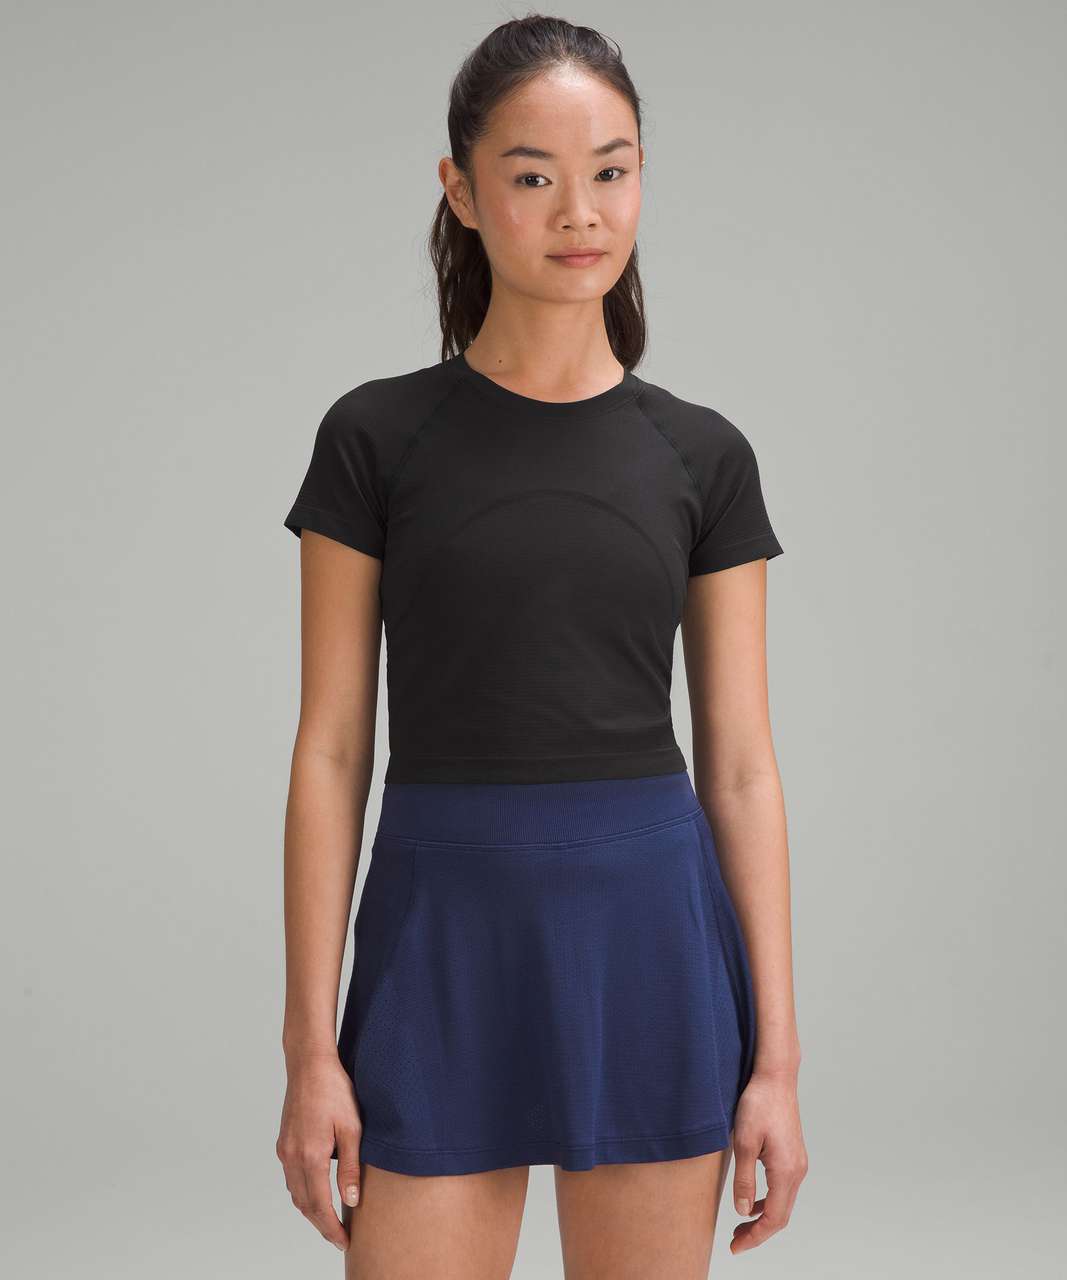 Lululemon Swiftly Tech Cropped Short-Sleeve Shirt 2.0 - Black / Black ...